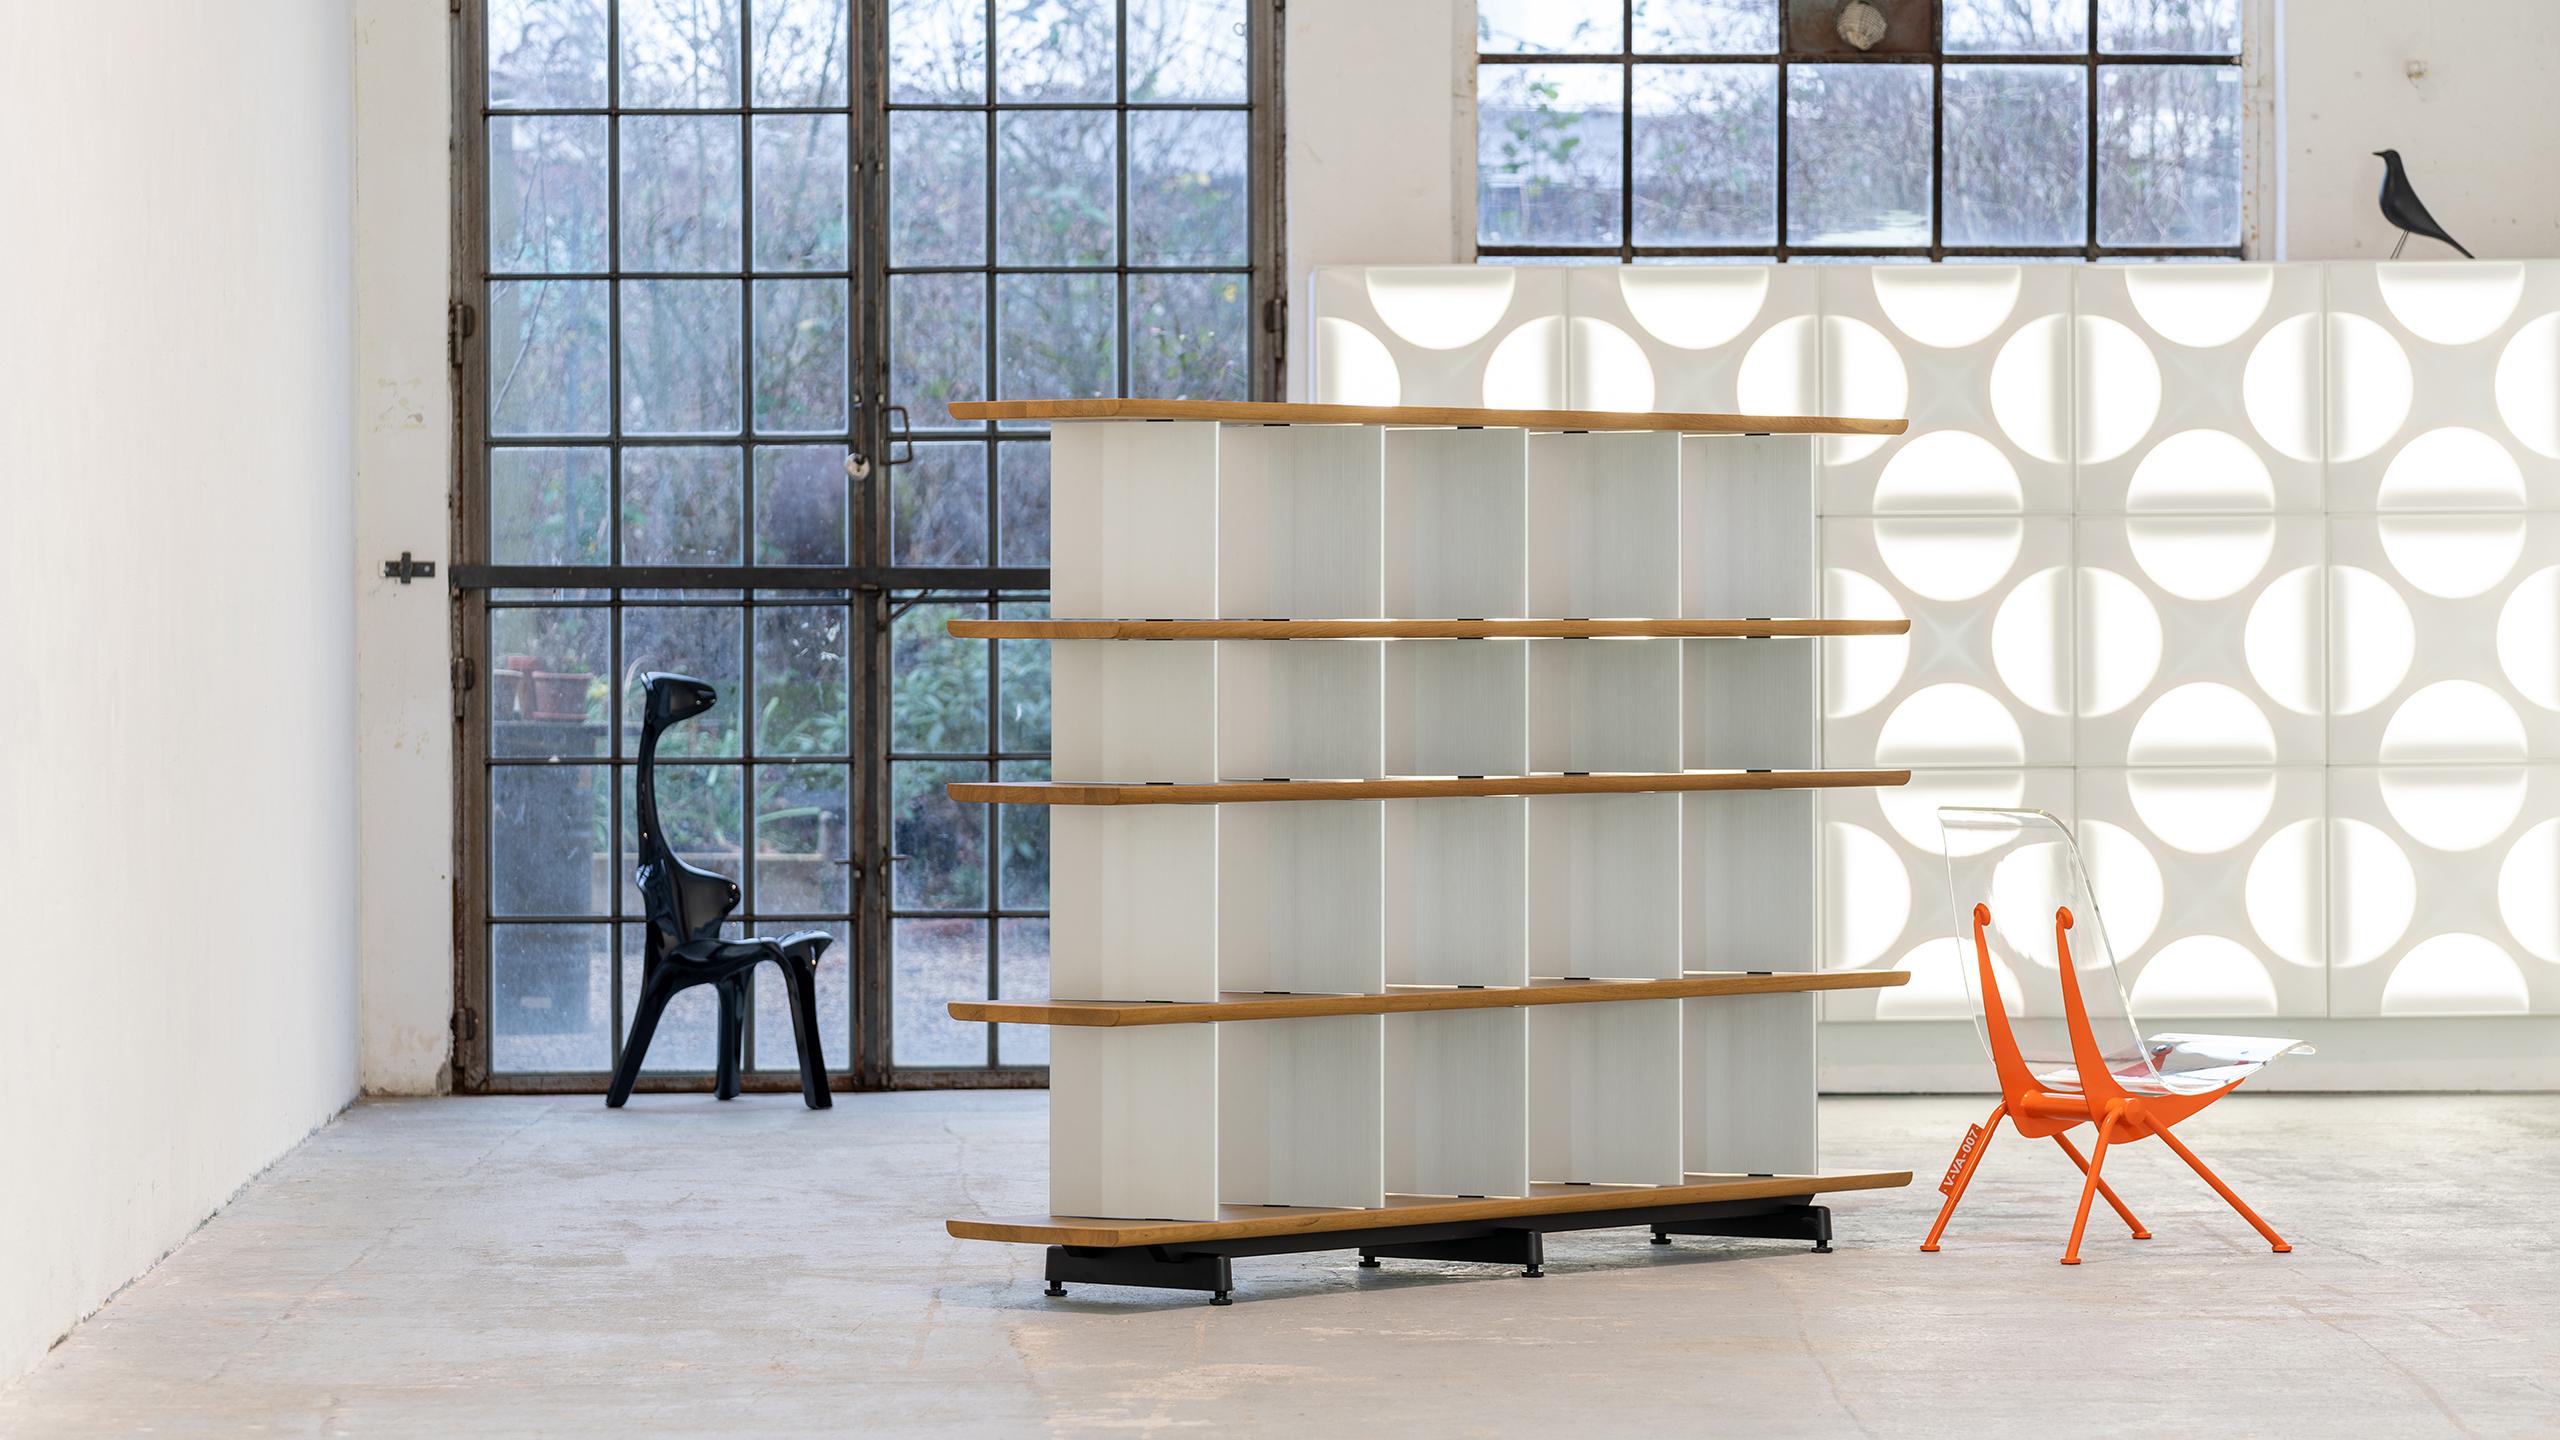 Edward Barber et Jay Osgerby ont conçu Planophore 2014 pour Vitra comme un objet à double usage - séparation de pièces et étagère.
Ses côtés ouverts créent une horizontalité soulignée par les étagères massives aux bords inférieurs arrondis, qui